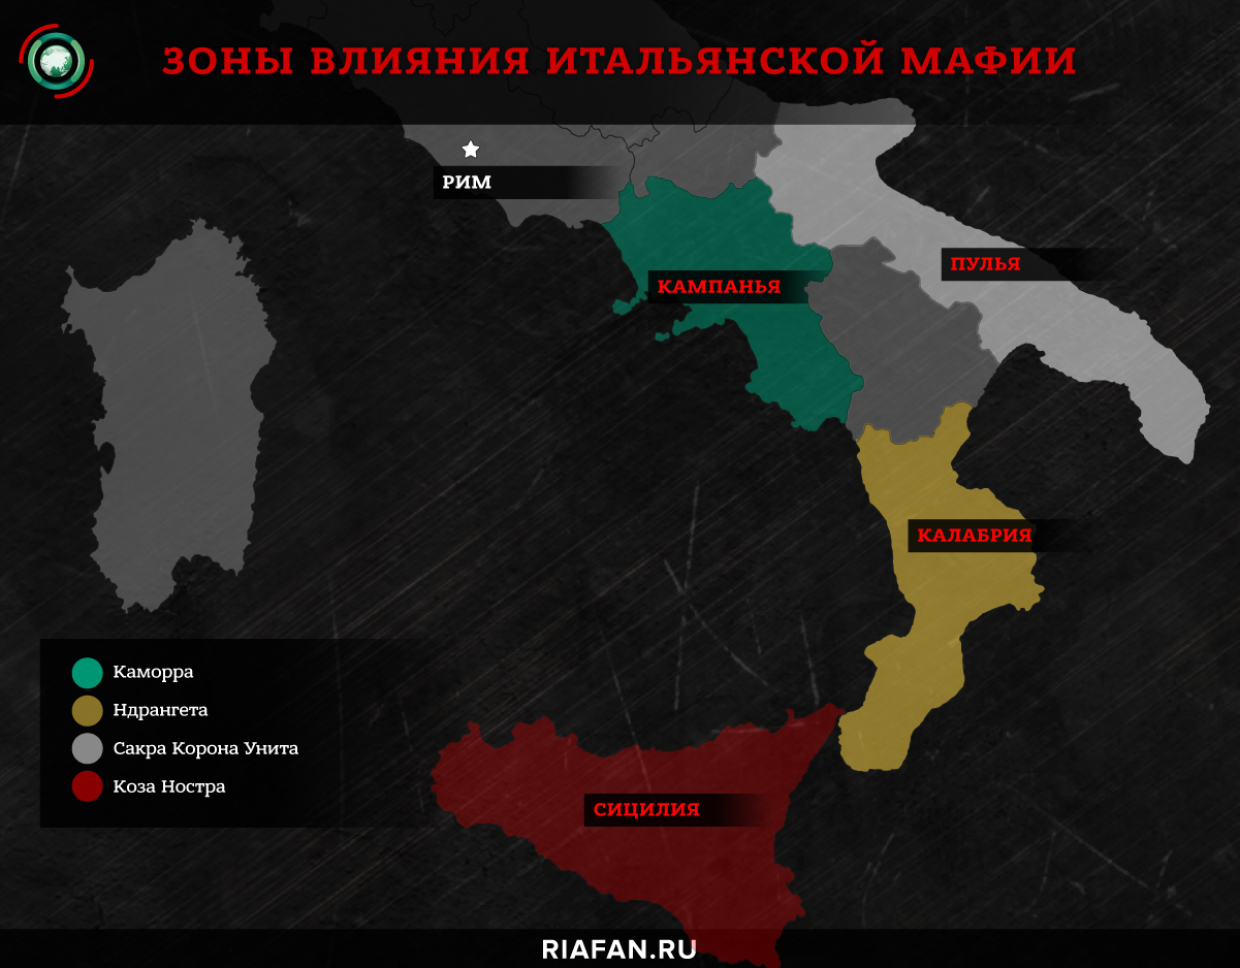 mafia albanesa: como traficantes de armas locales, las drogas y las personas se dieron a conocer en todo el mundo